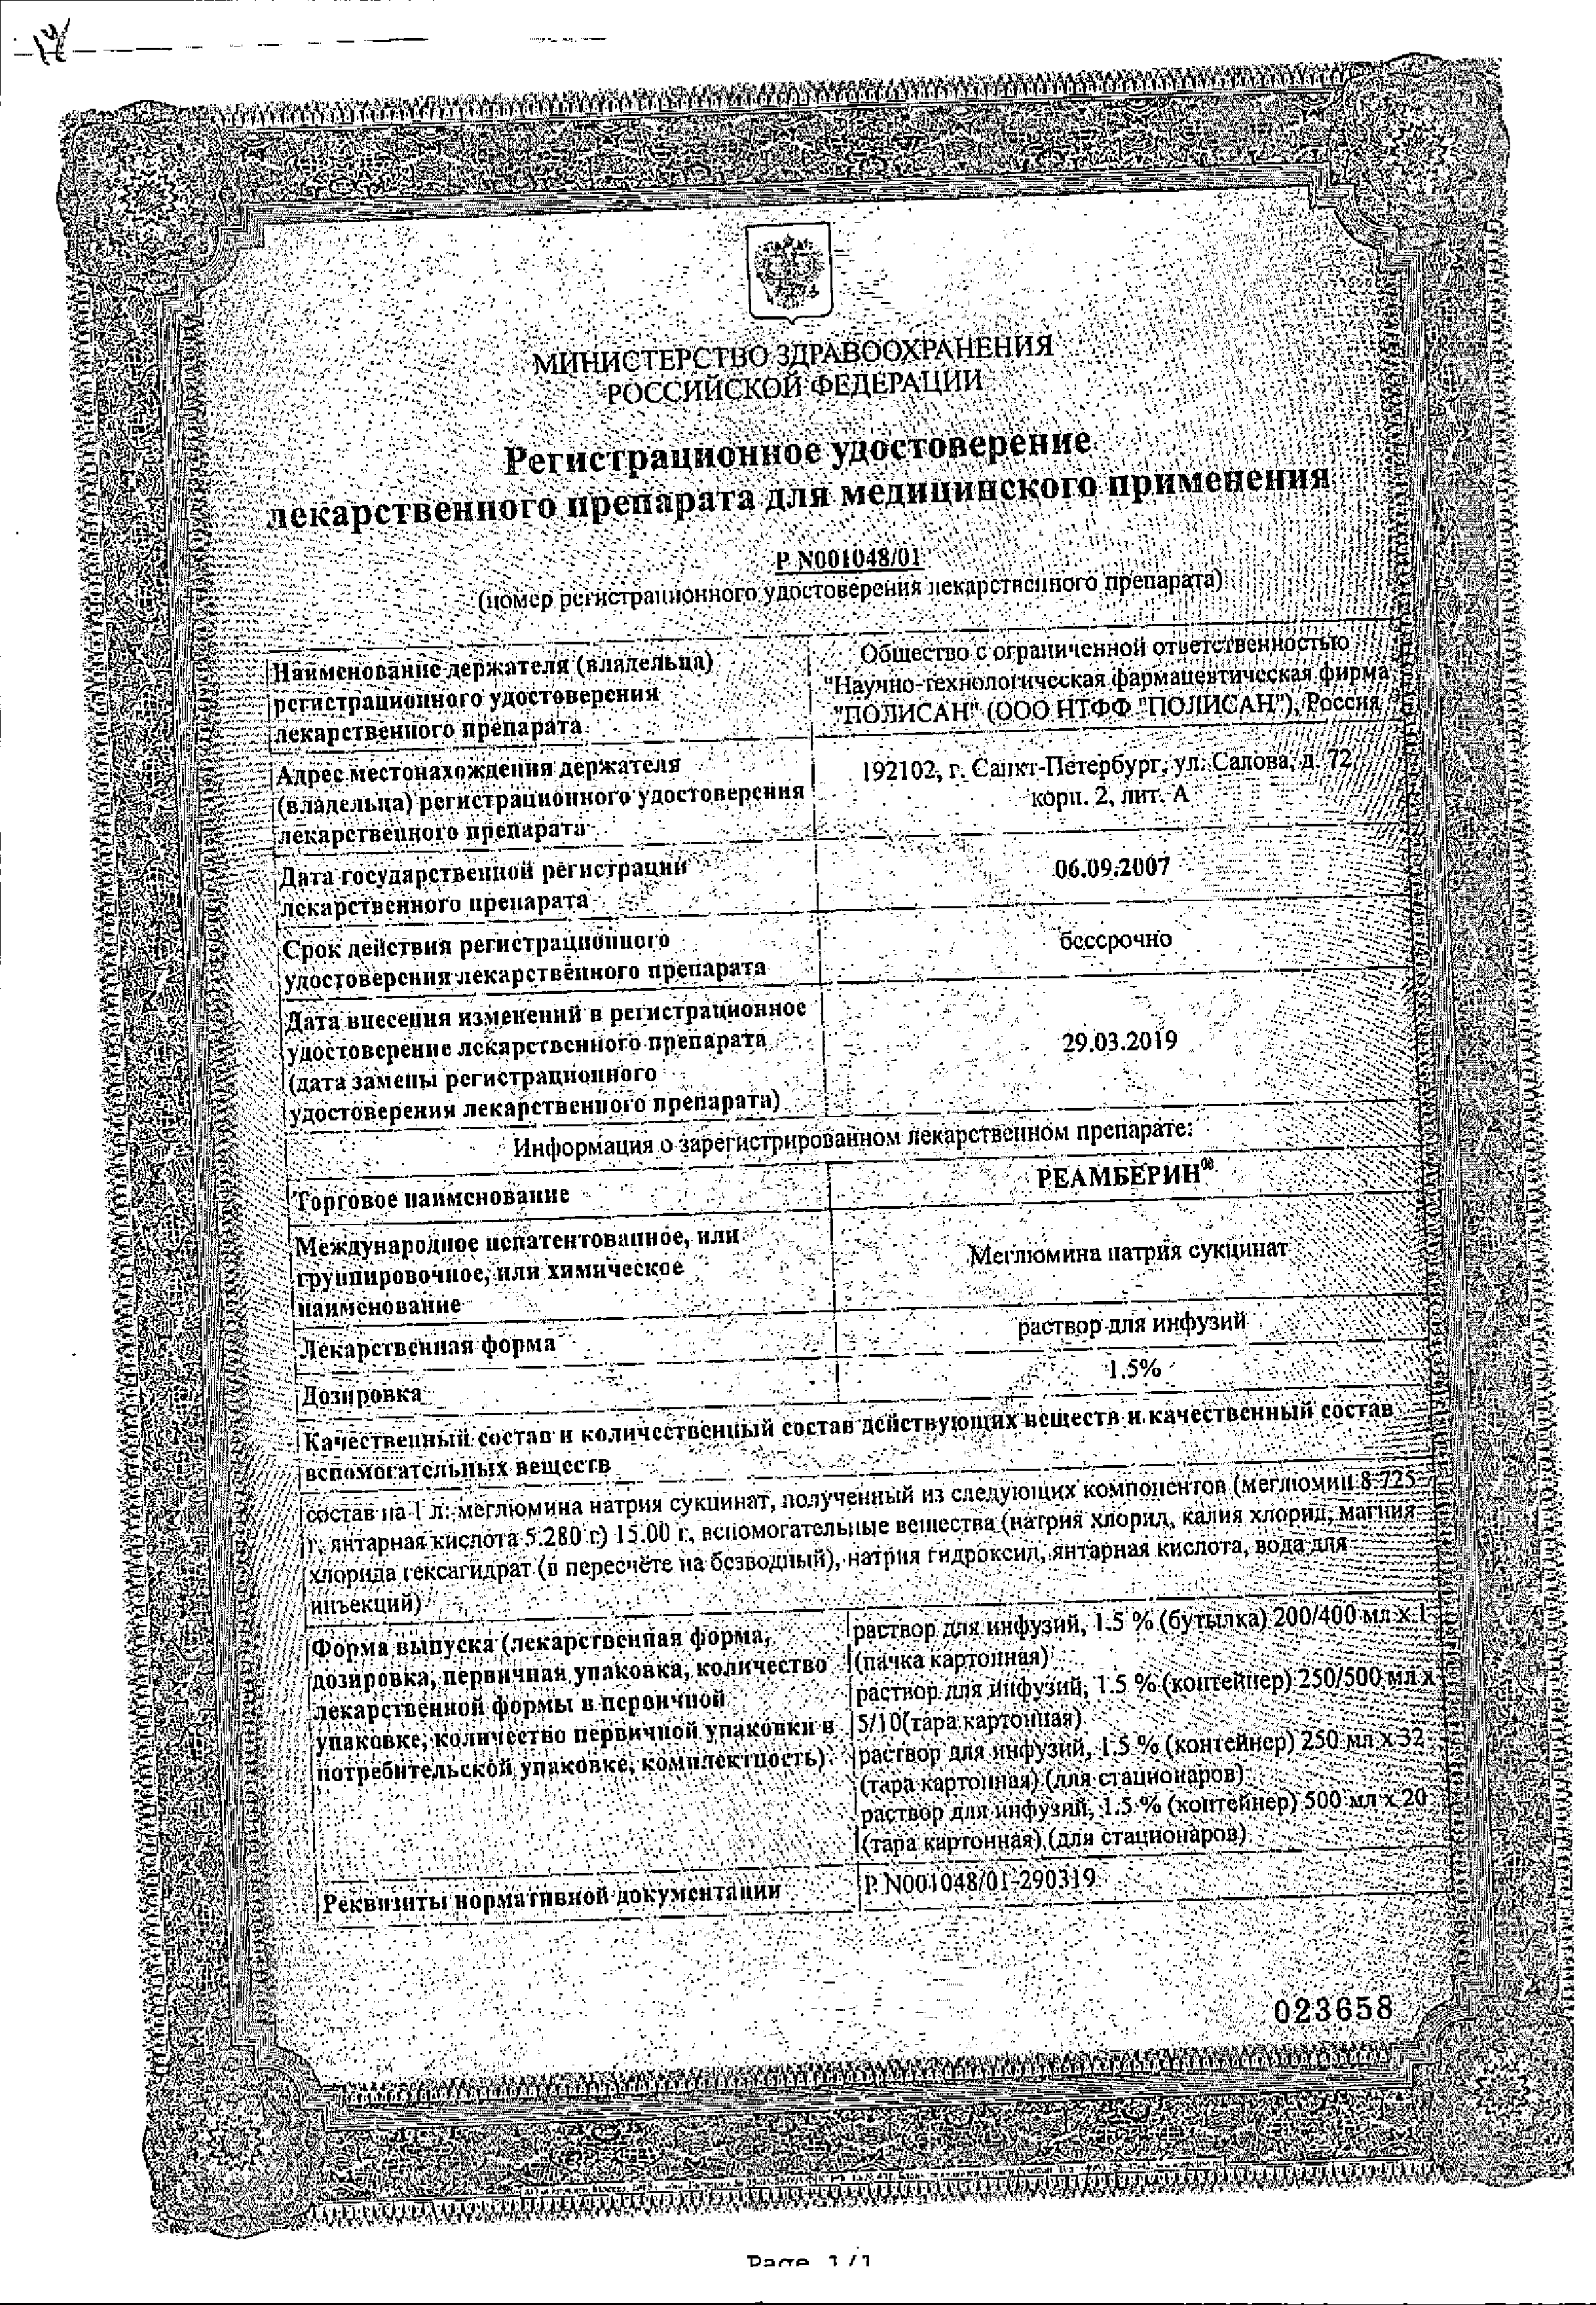 Реамберин сертификат